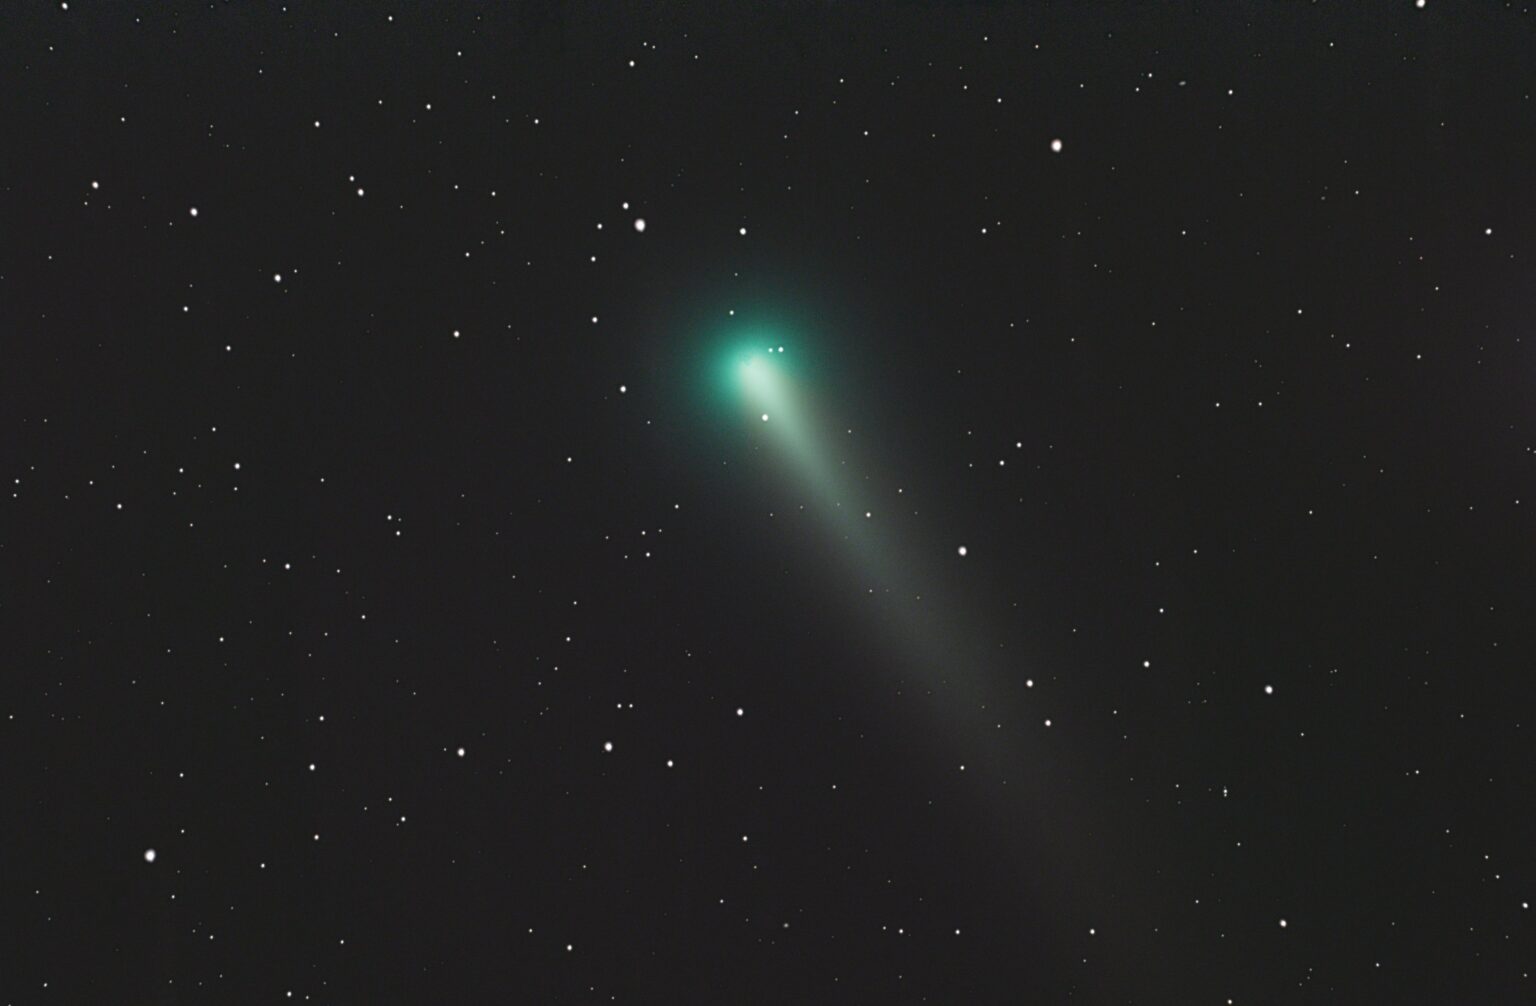 Comet Leonard C/2021 A1 VisibleDark